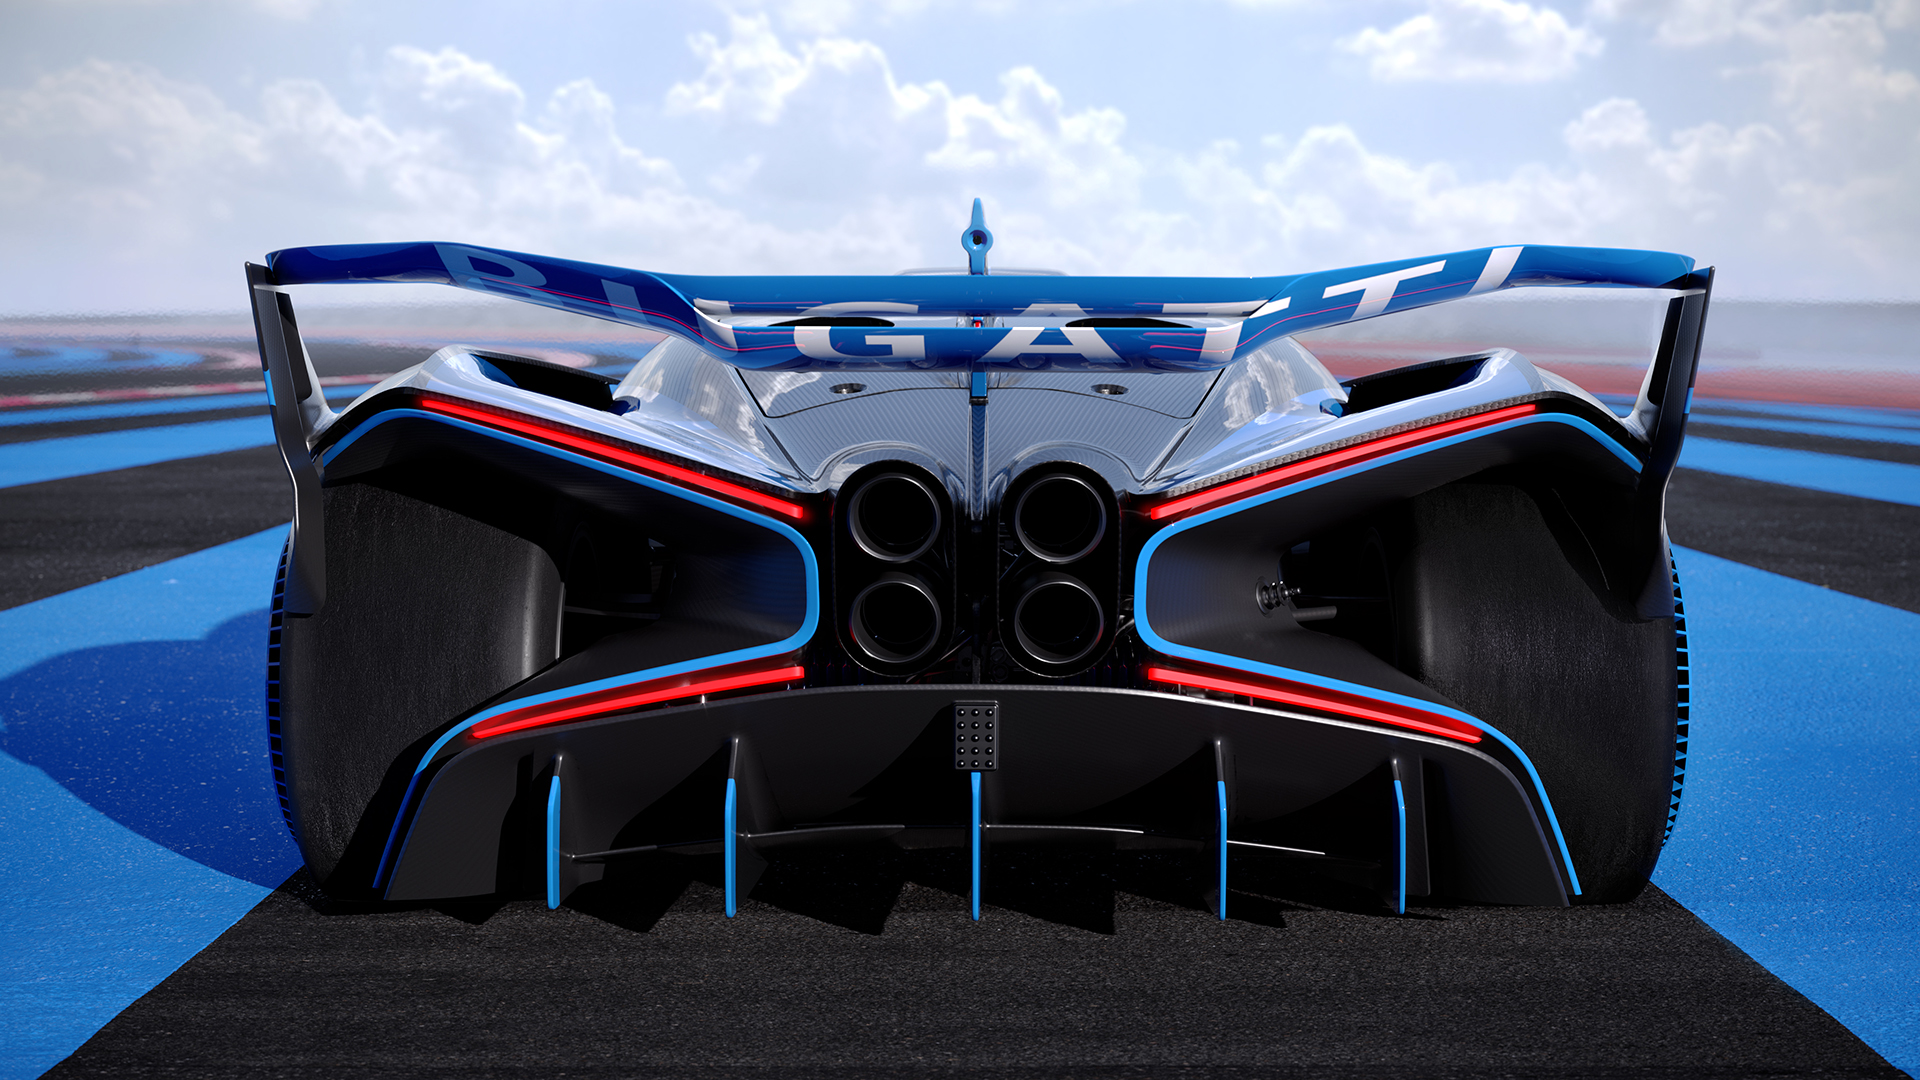 Bugatti Bolide brings 1,825bhp to the track